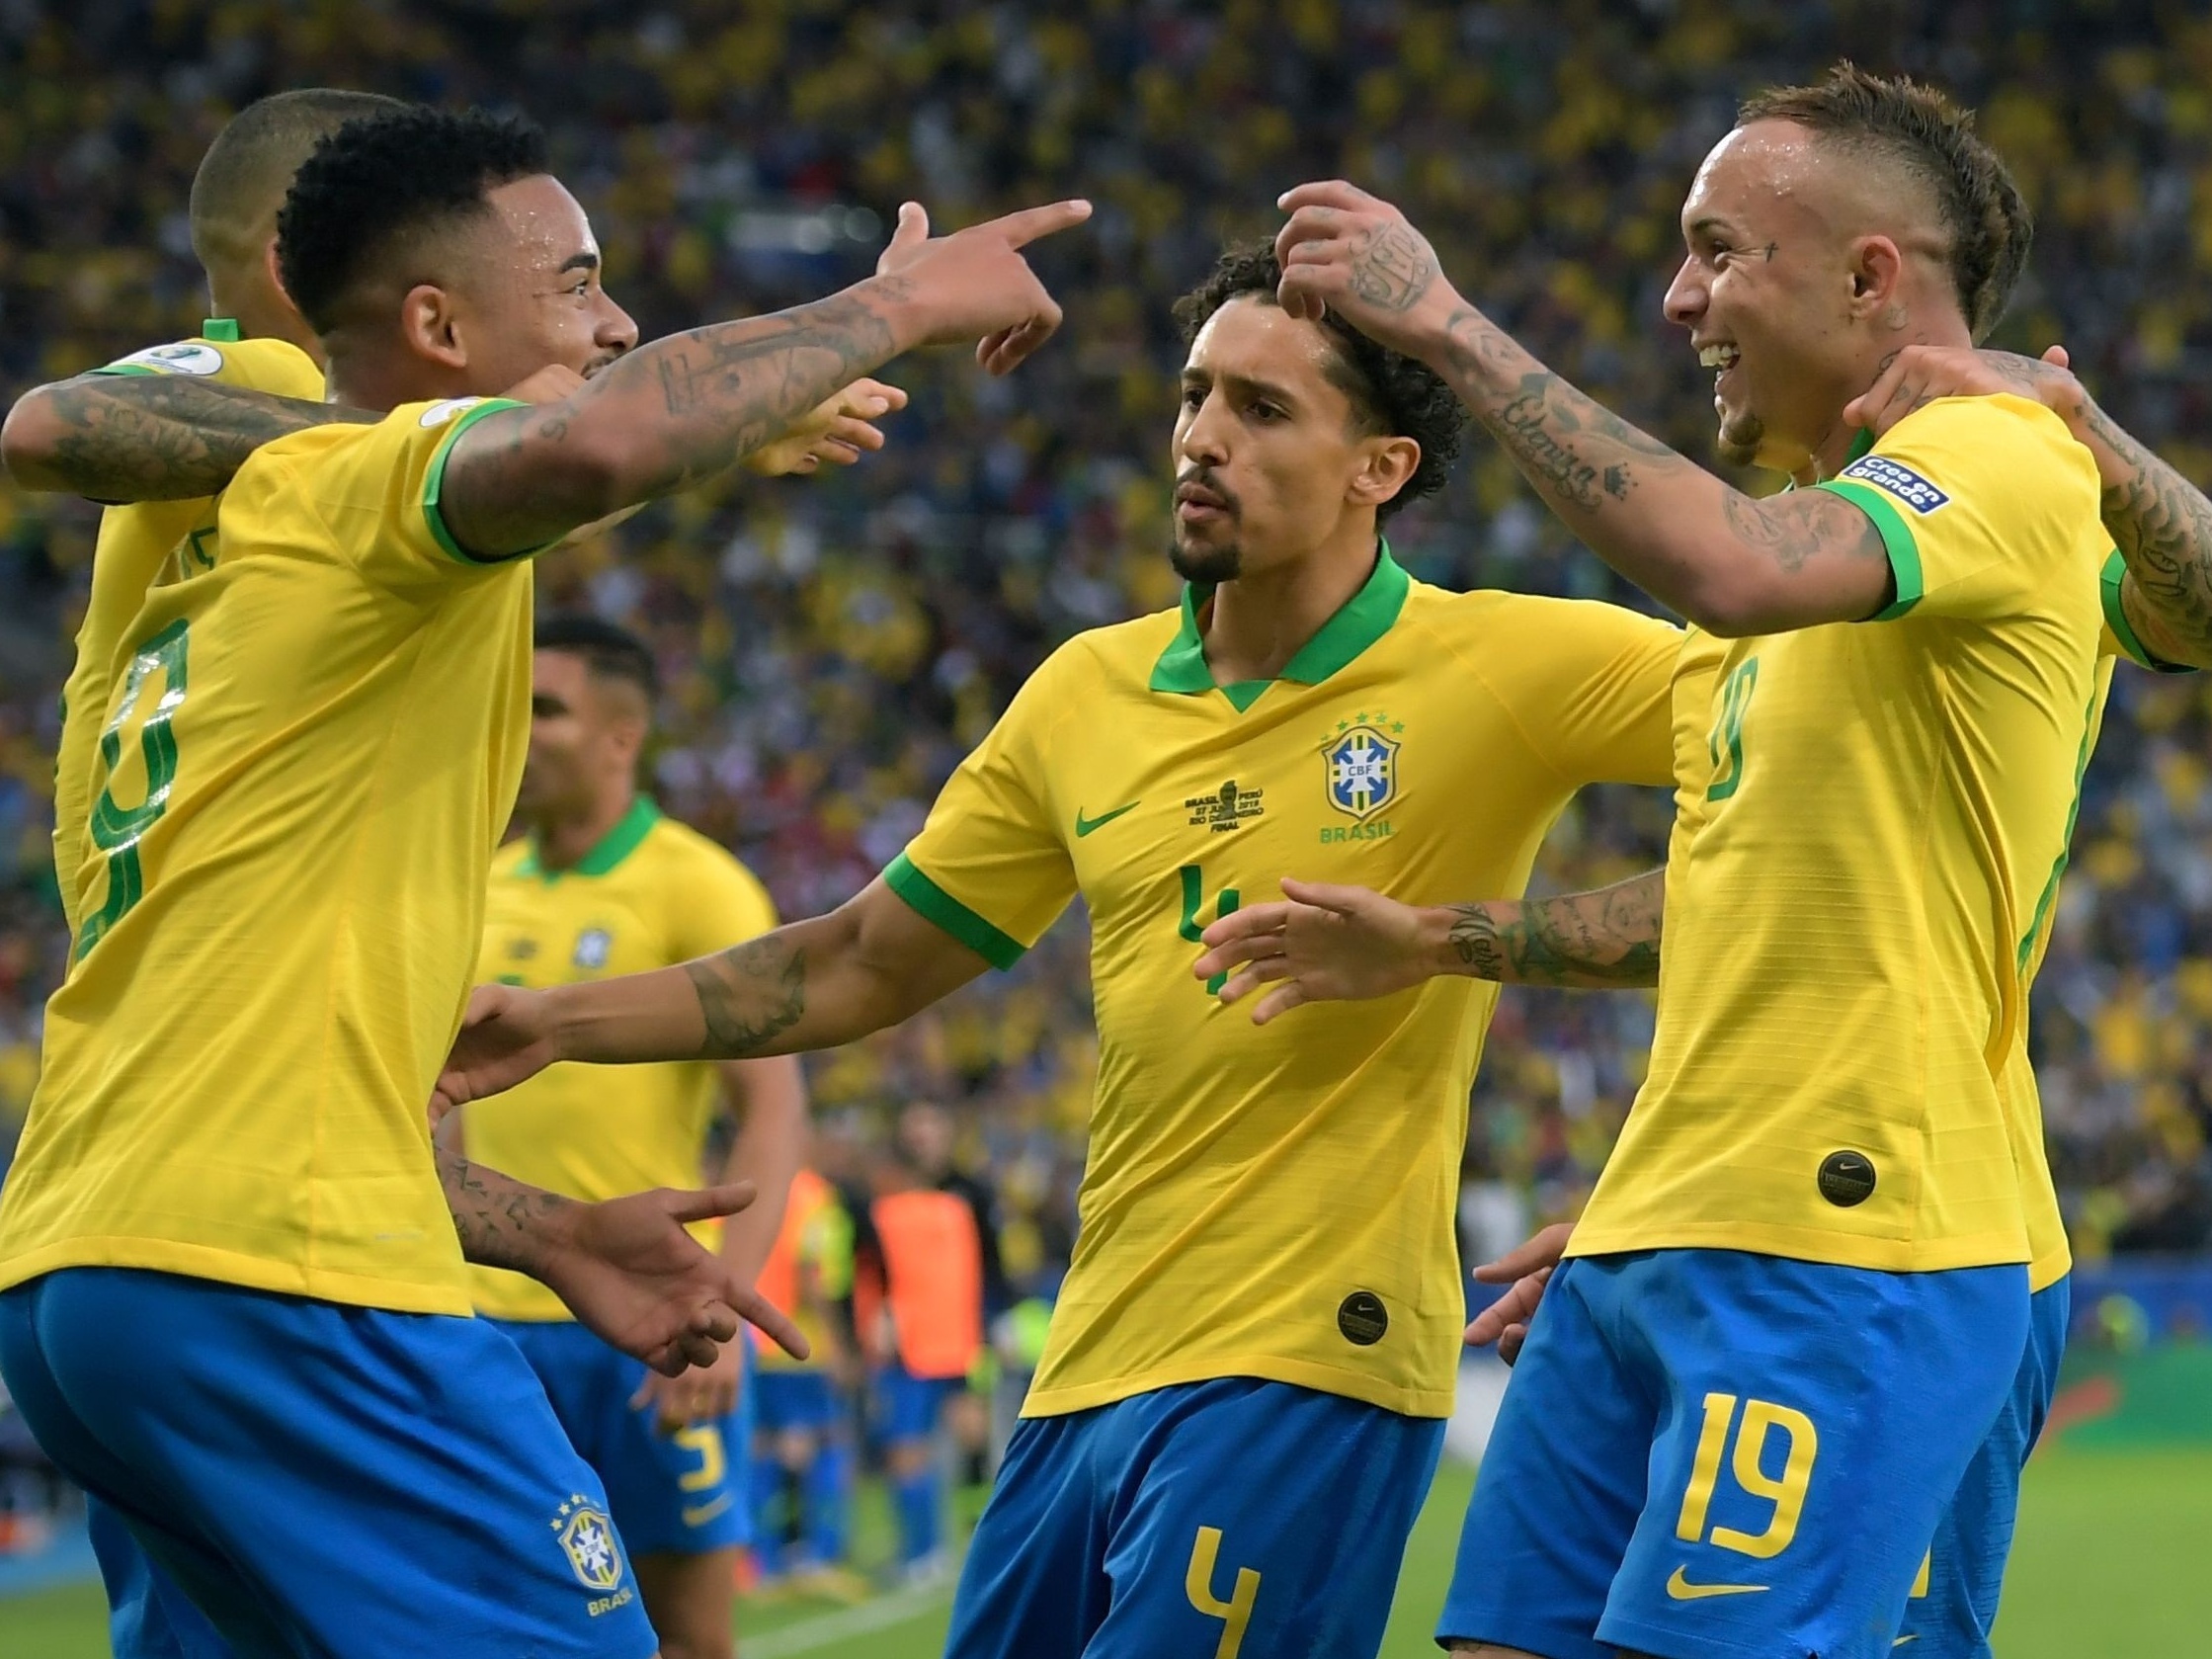 Jogos do Brasil e final têm ingressos esgotados na Copa América -  16/05/2019 - Esporte - Folha